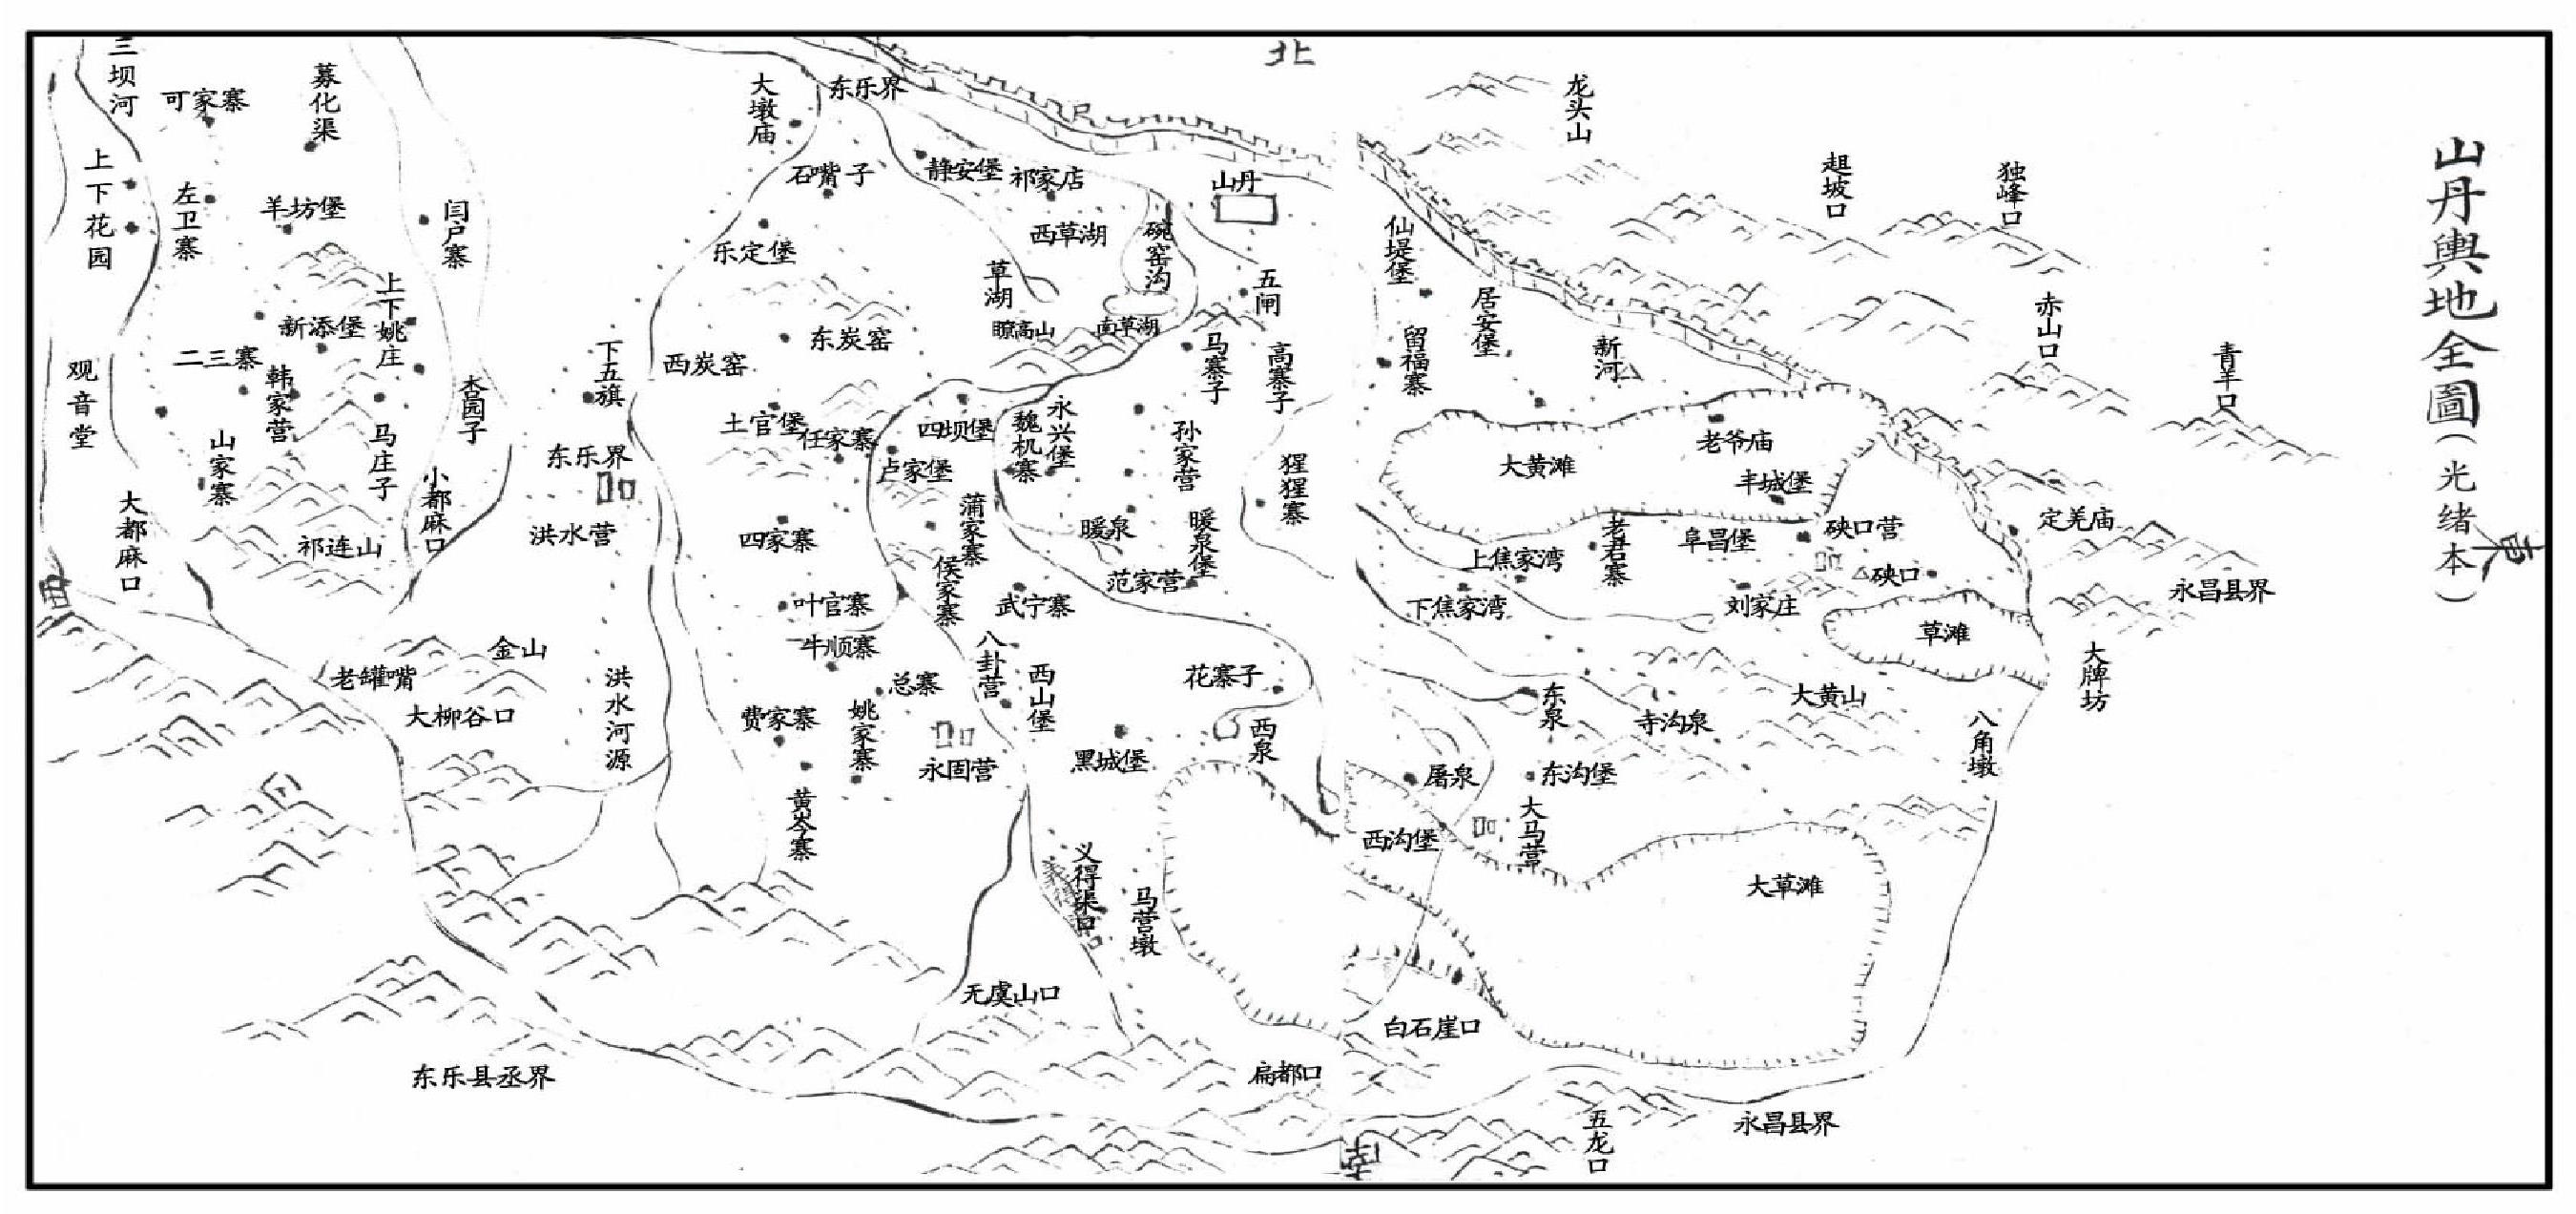 山丹舆地全图